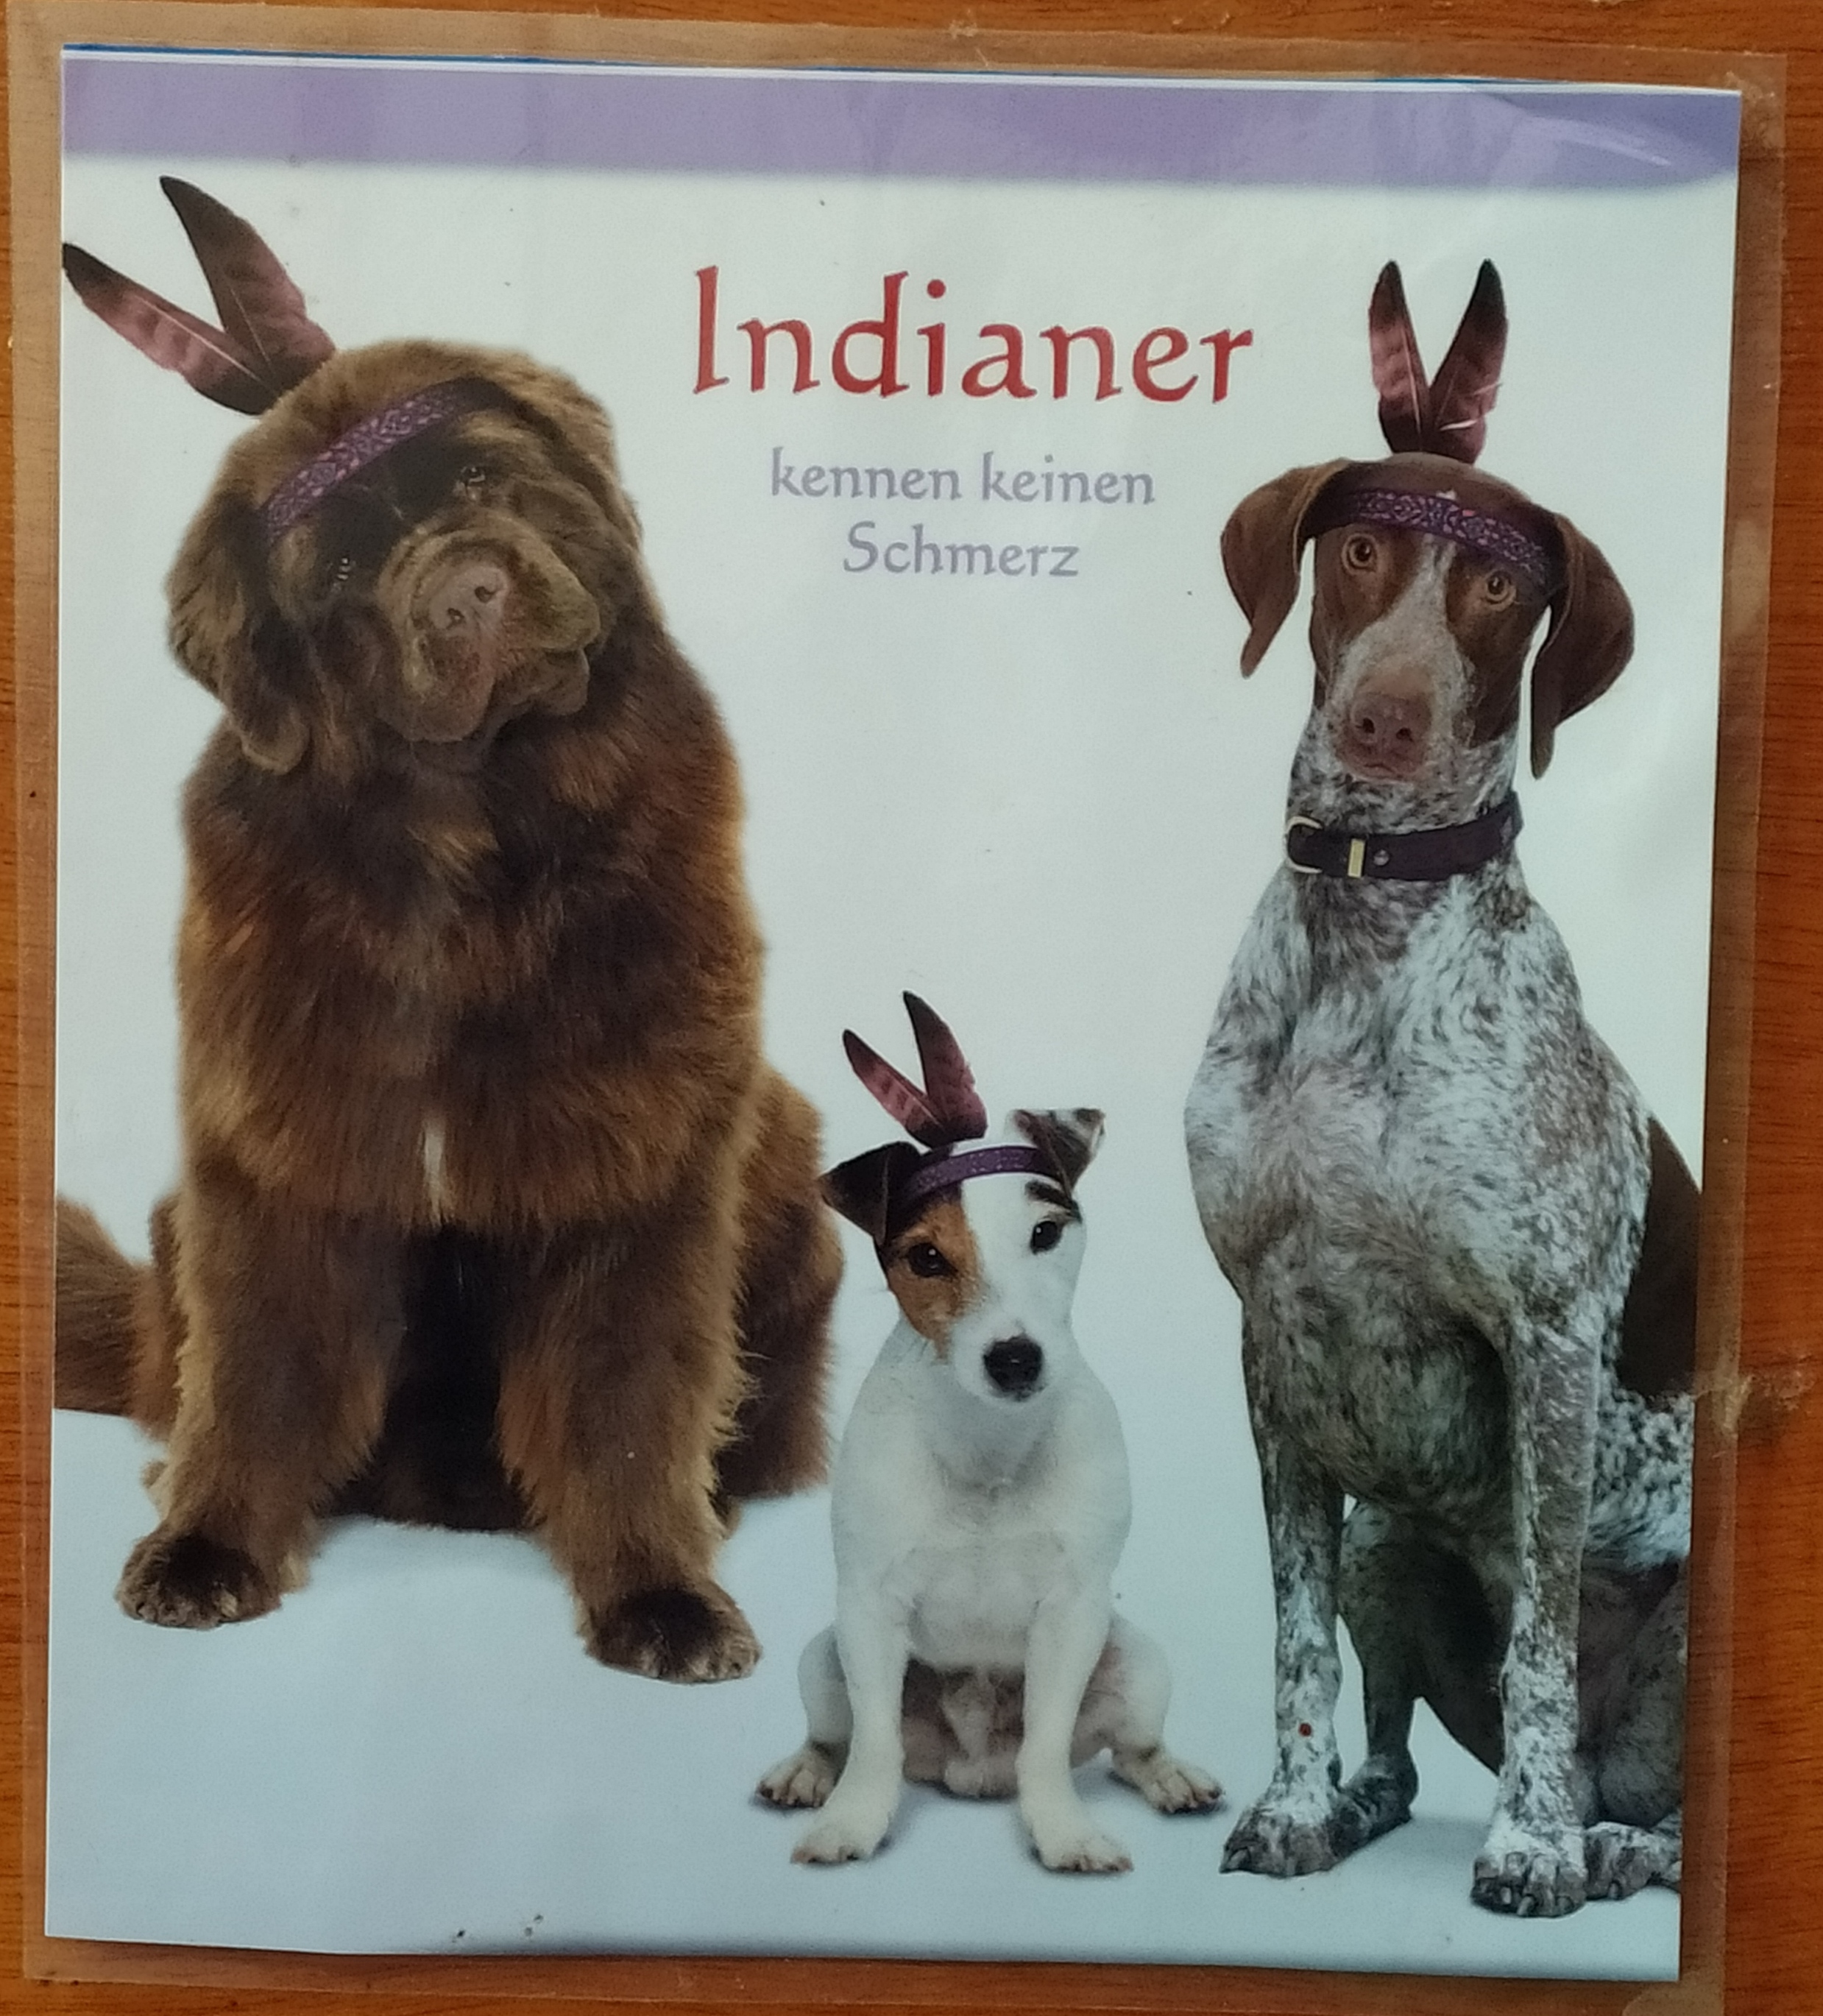 Ein Indianer kennt keinen Schmerz ( aus der Werbung) und unsere Hunde unterdrücken oft ohre Schmerzen...